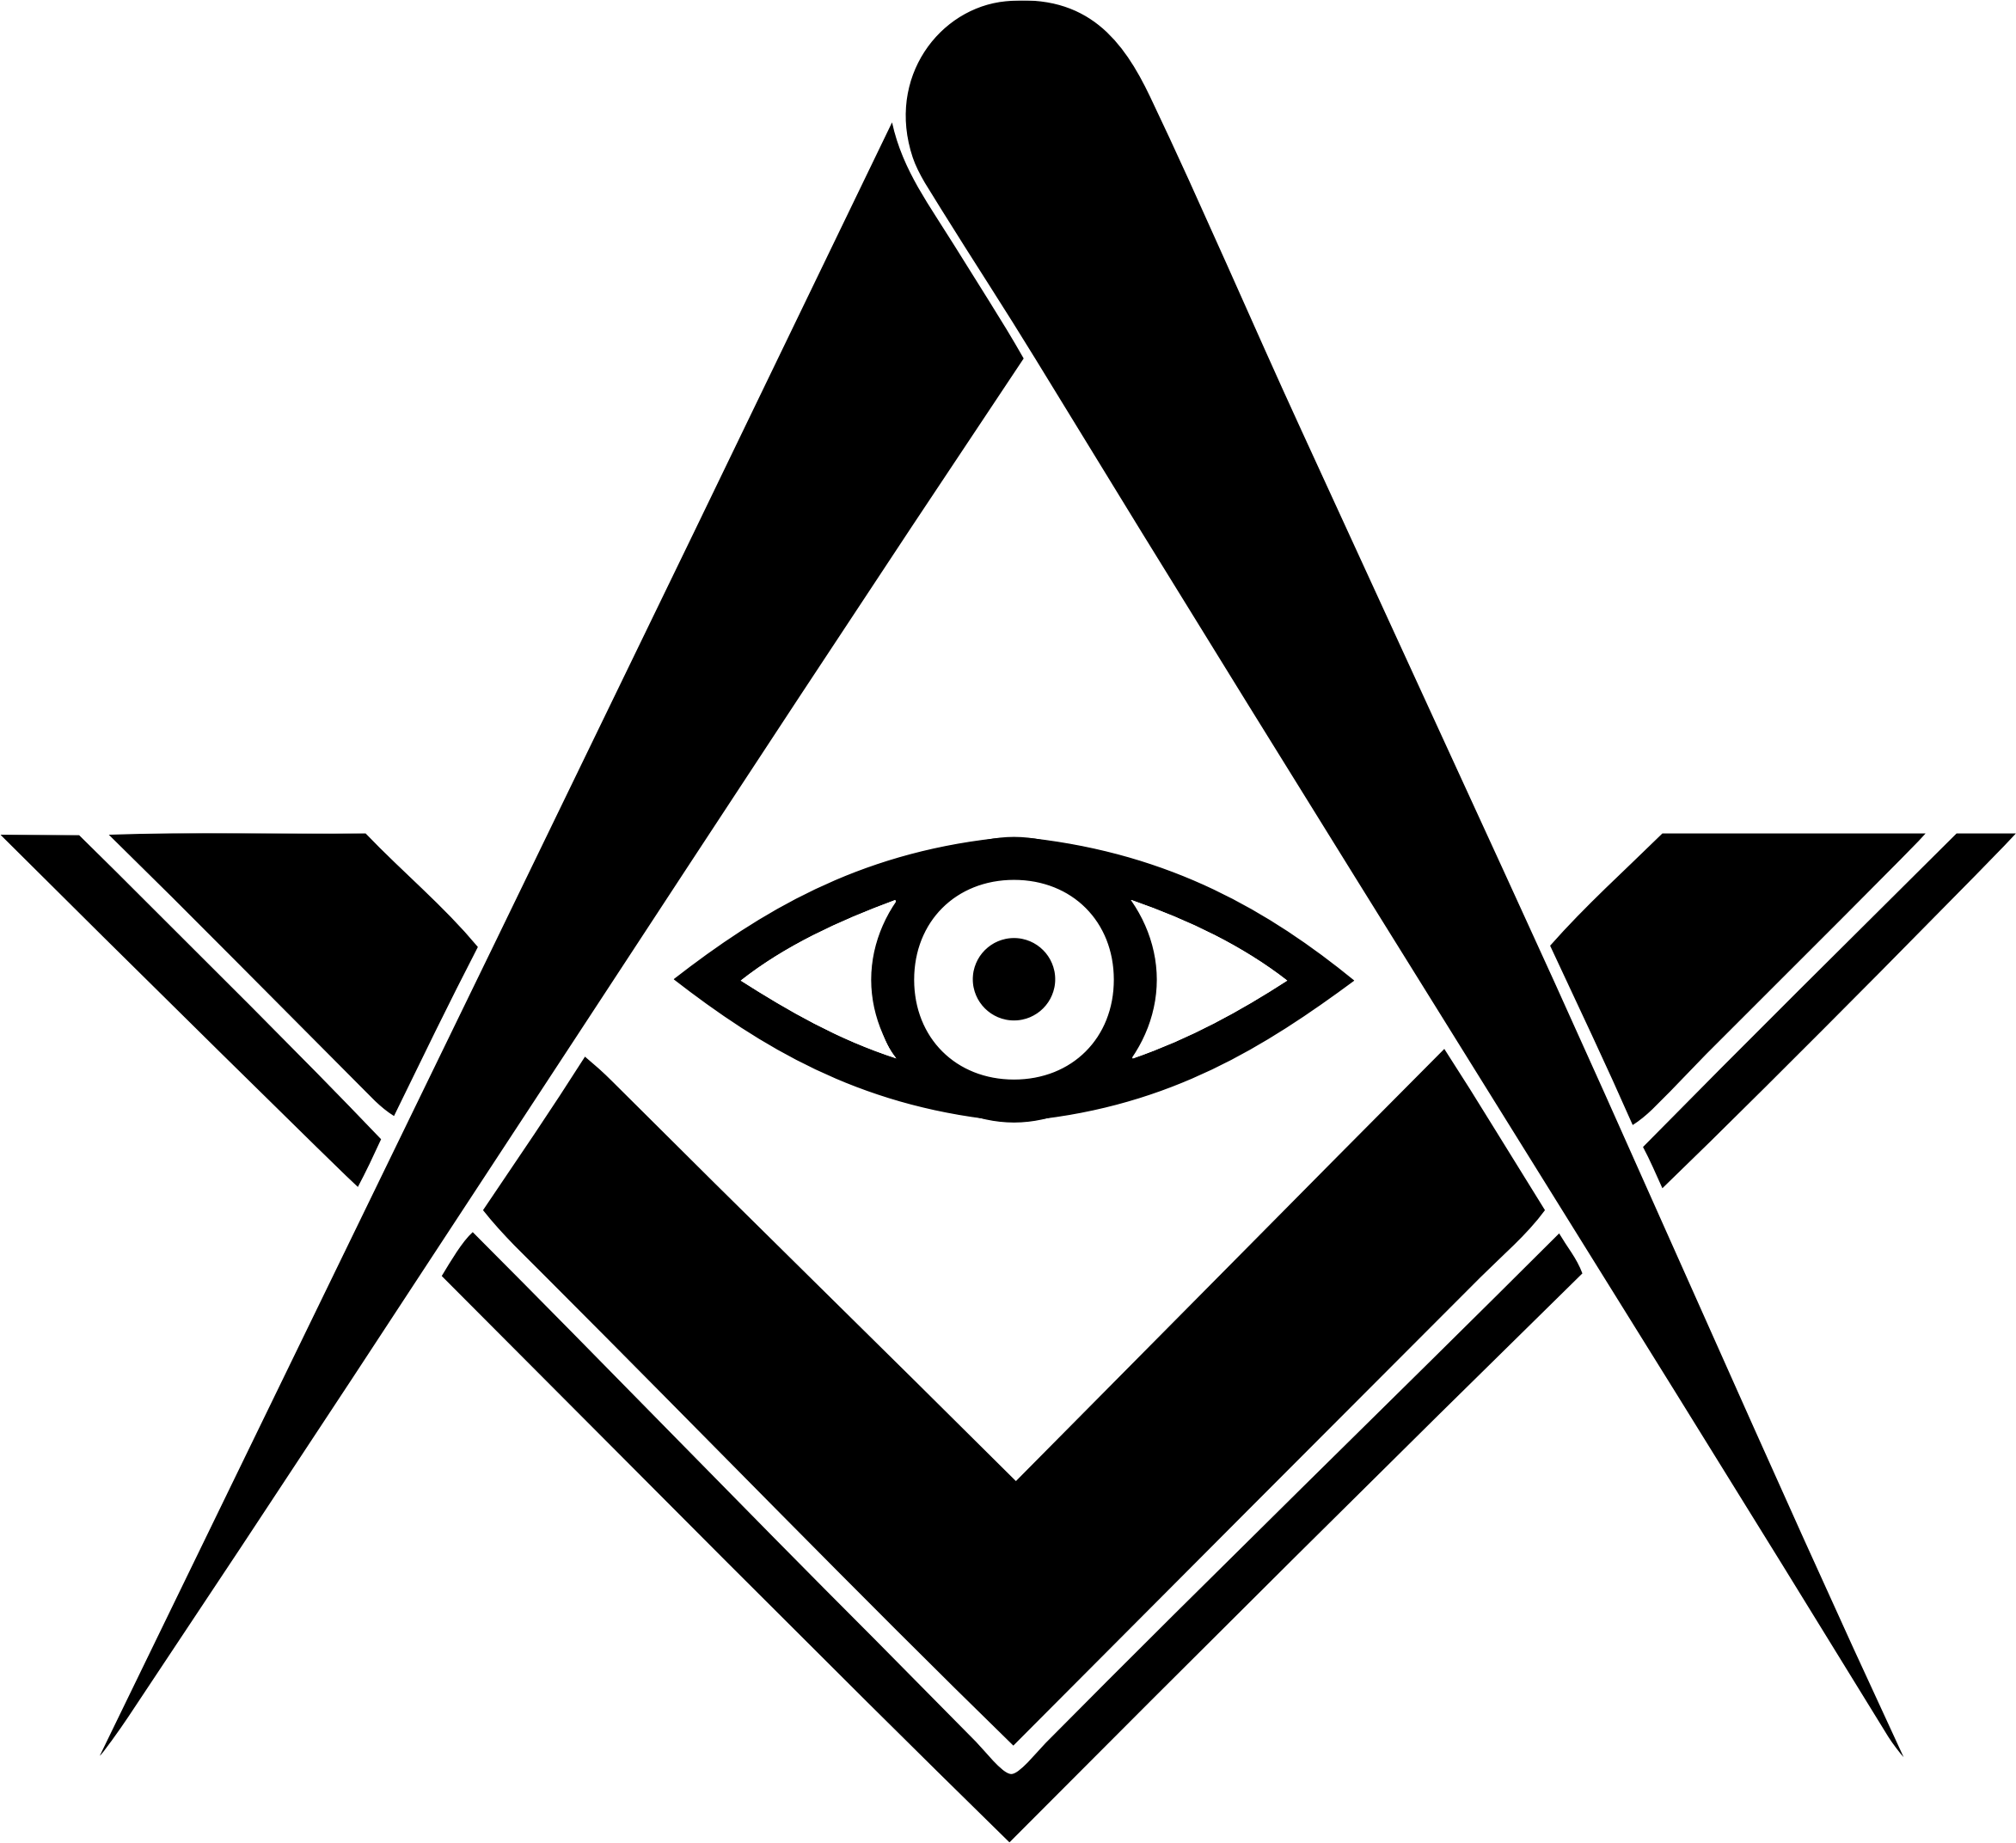 Blue Lodge Logo - Clipart - Freemasonry SacredMasonry, Masonic Blue Lodge Logo ...